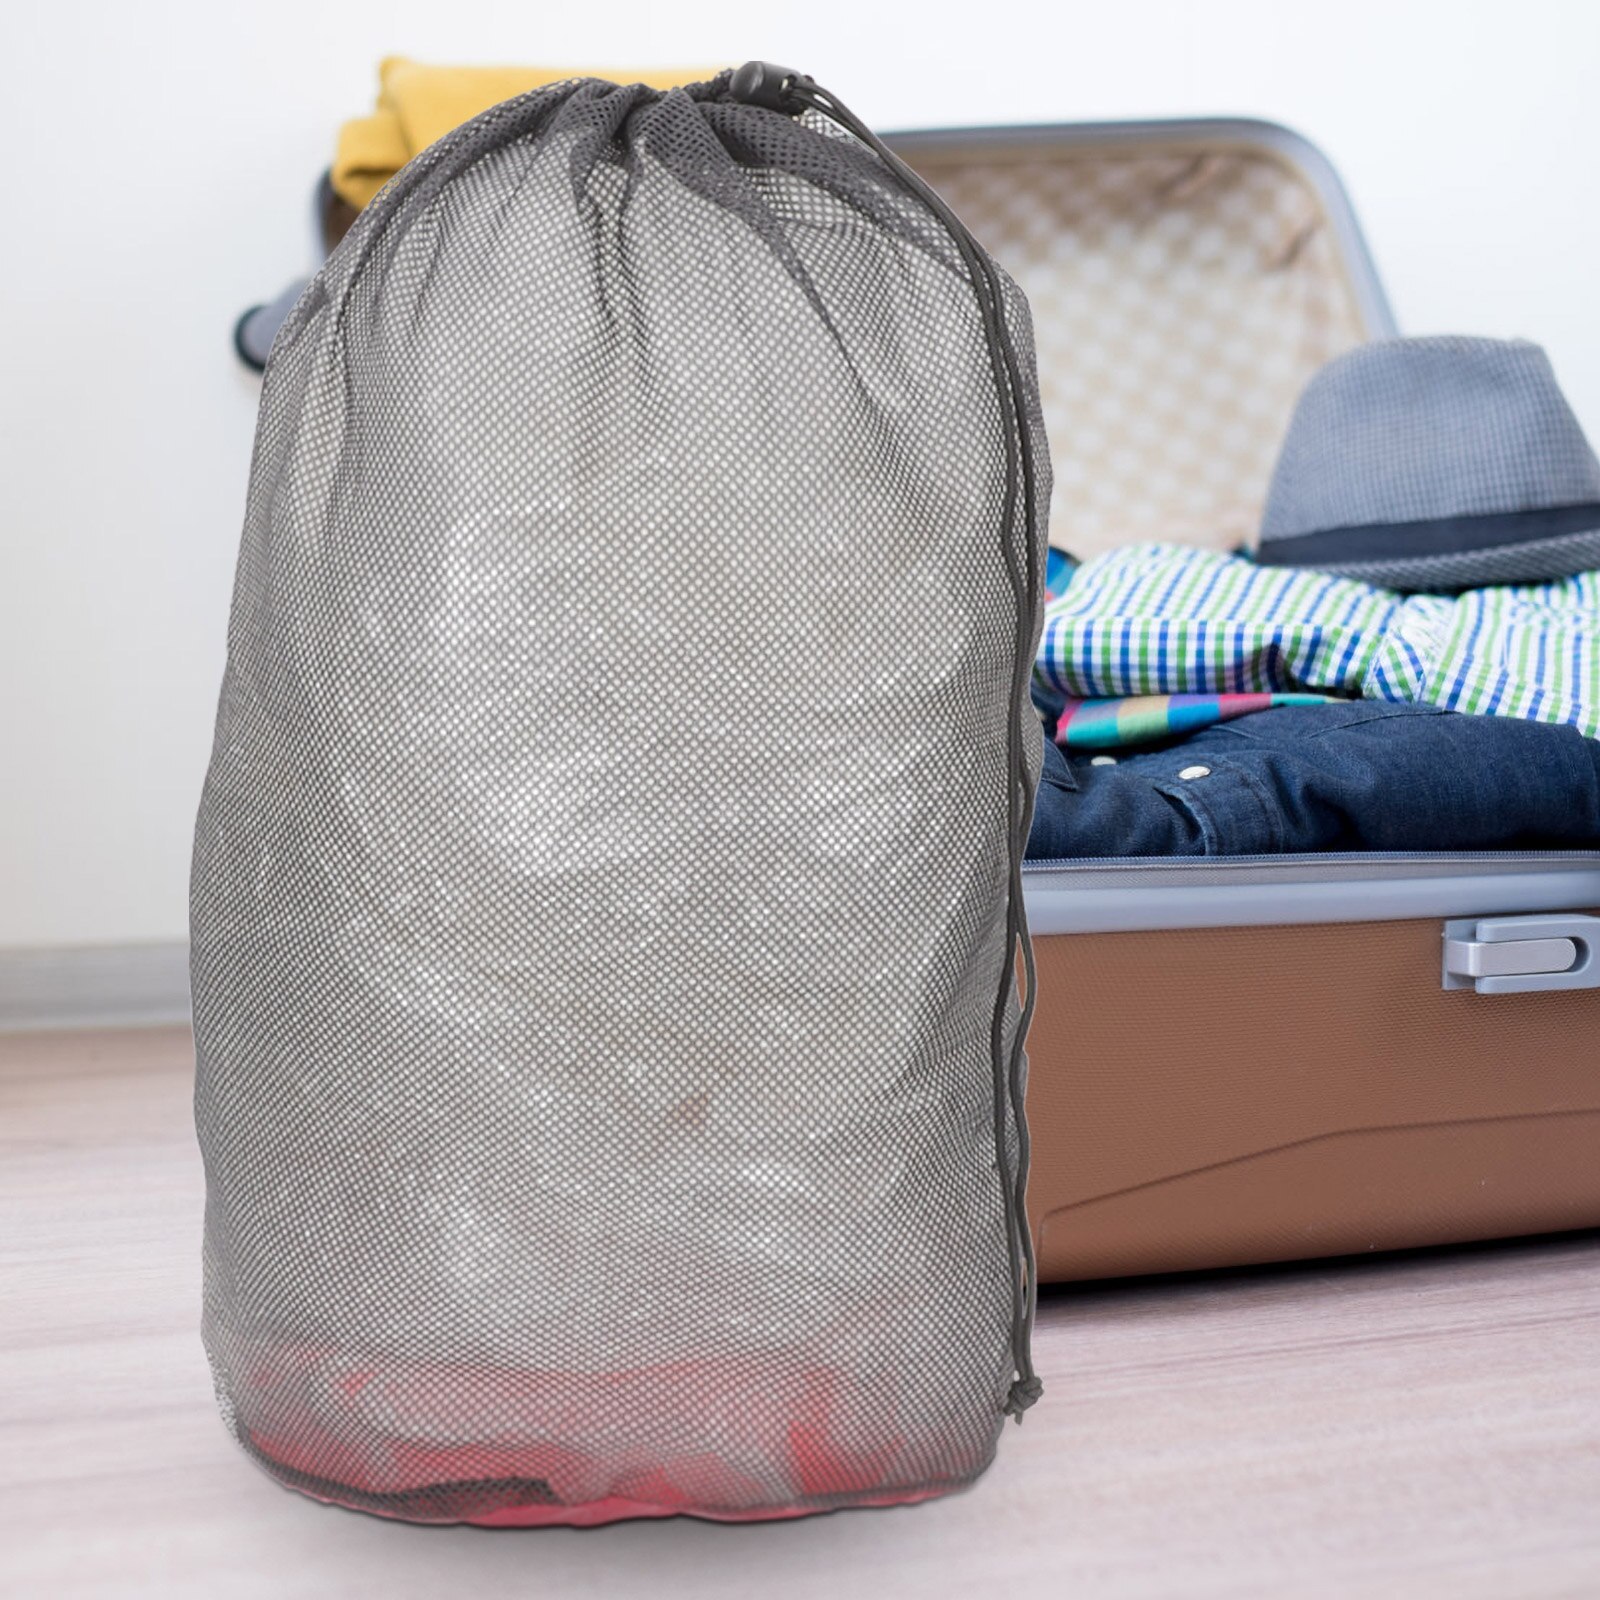 침낭 보관 메쉬 여행 정리함 가방, 수하물 드로스트링 포장, 그물 나일론 큐브, 휴대용 오거나이저, 2 개